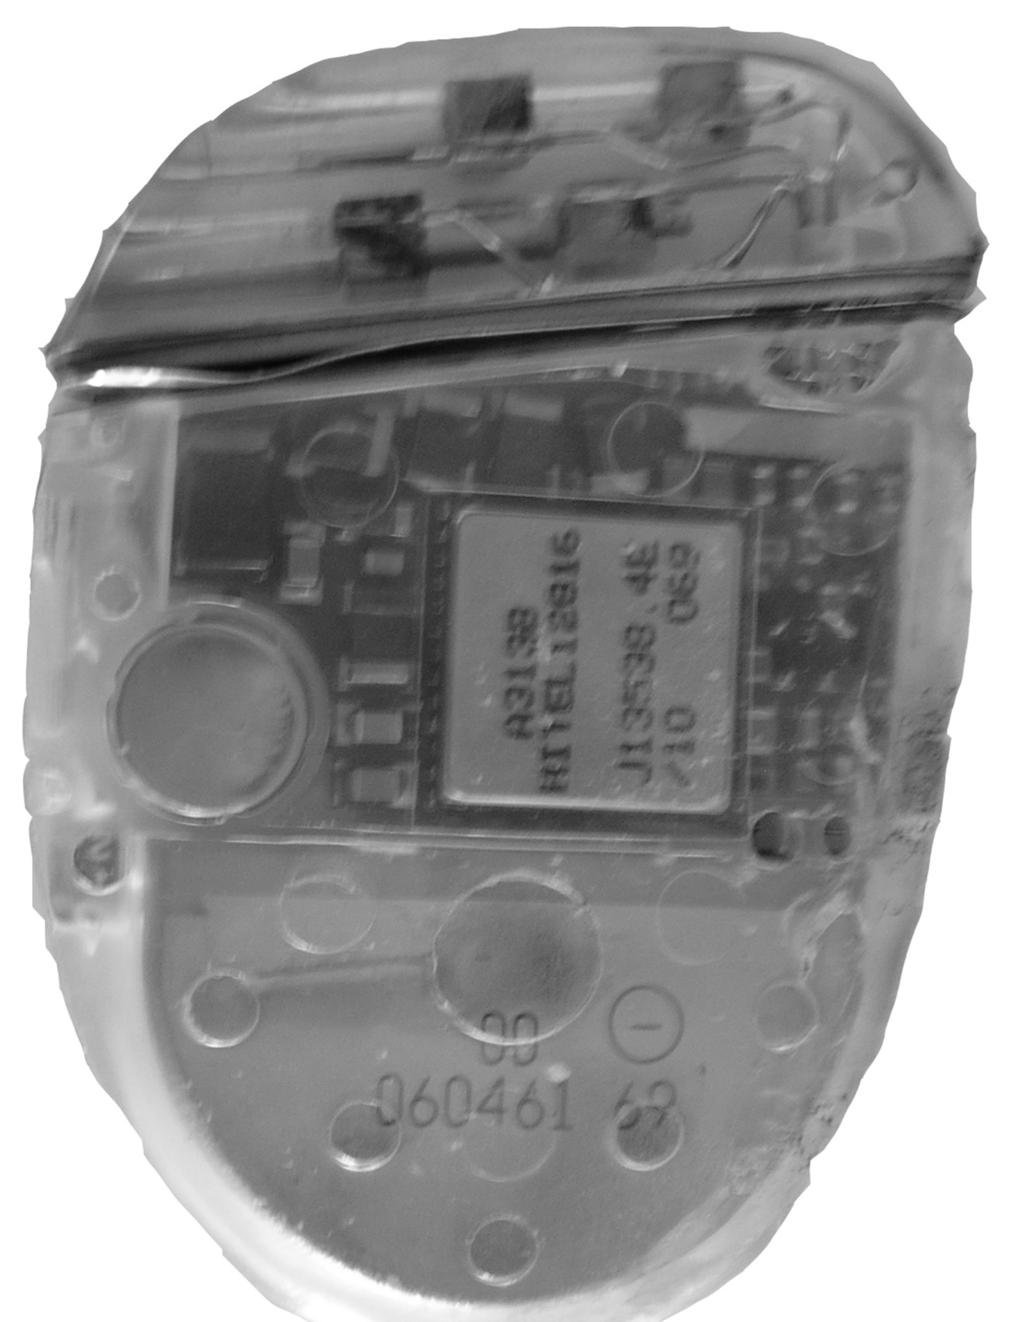 Il pacemaker propriamente detto è un oscillatore elettronico contenuto in una custodia, normalmente in acciaio inox o in titanio (Figura 9), che viene impiantato per via chirurgica, permanentemente